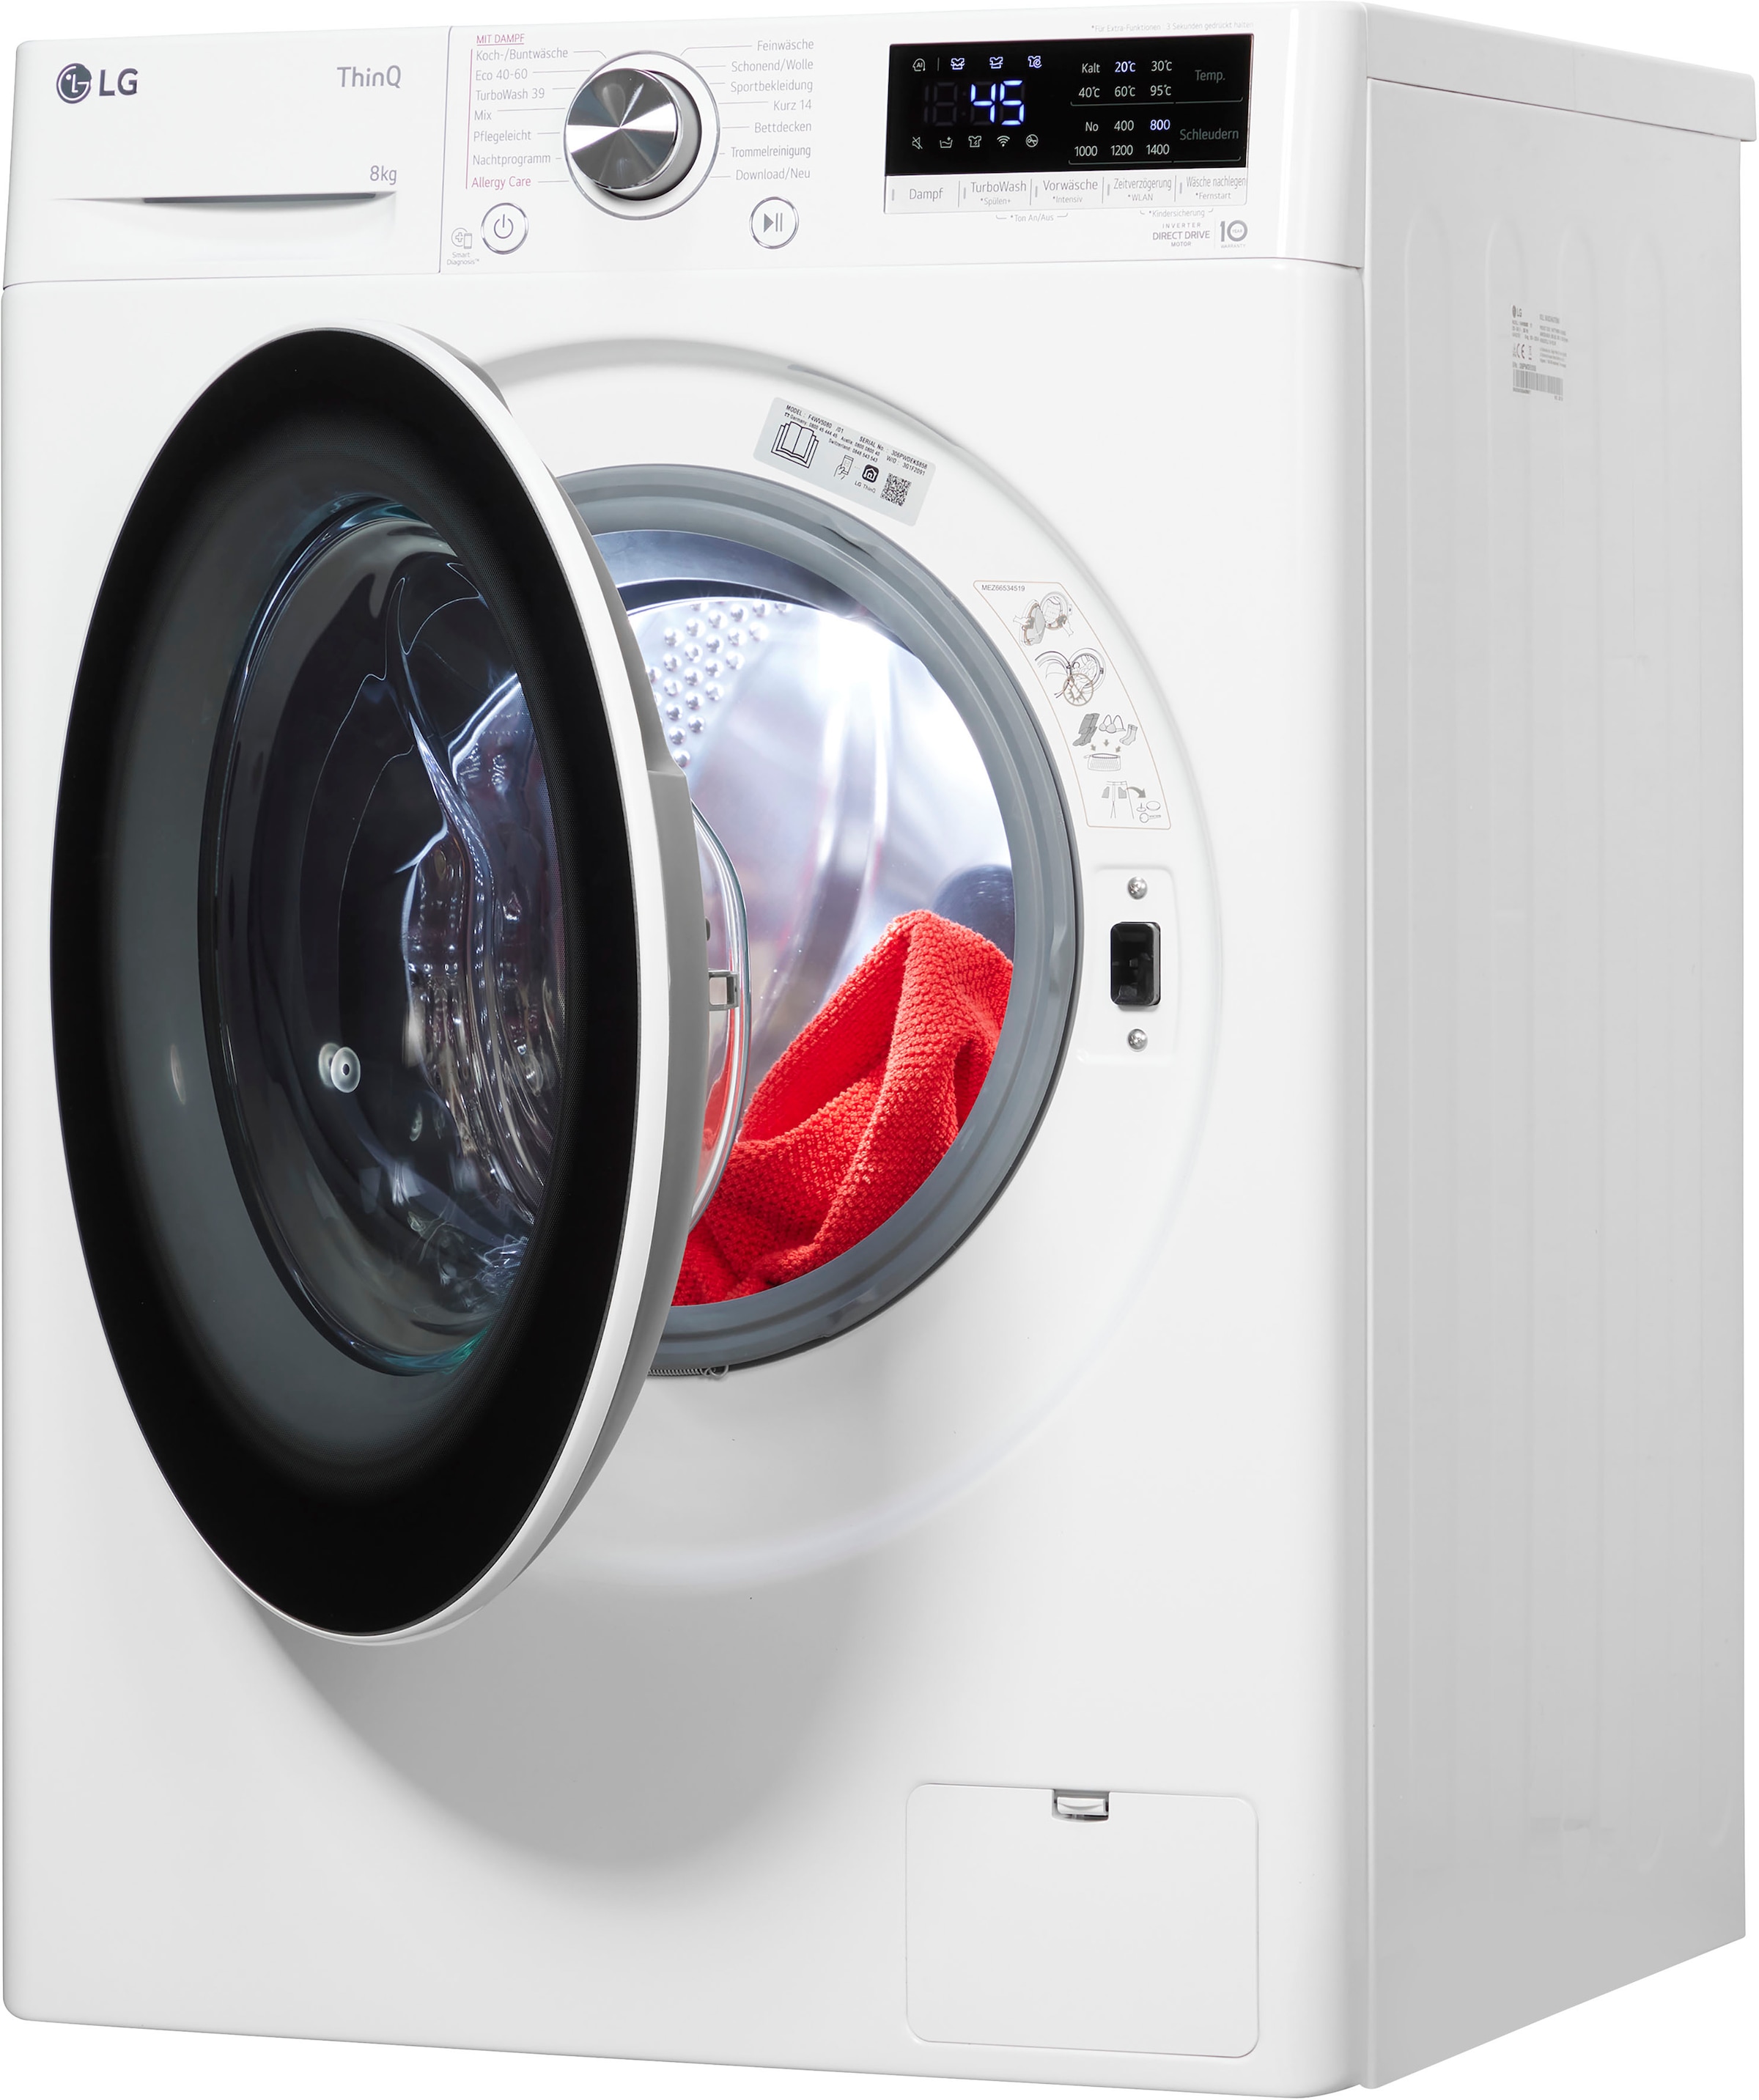 LG Waschmaschine »F4WV5080«, F4WV5080, 8 Jahren XXL Steam-Funktion, mit 4 1400 U/min, 3 inklusive Garantie Garantie Jahre kg